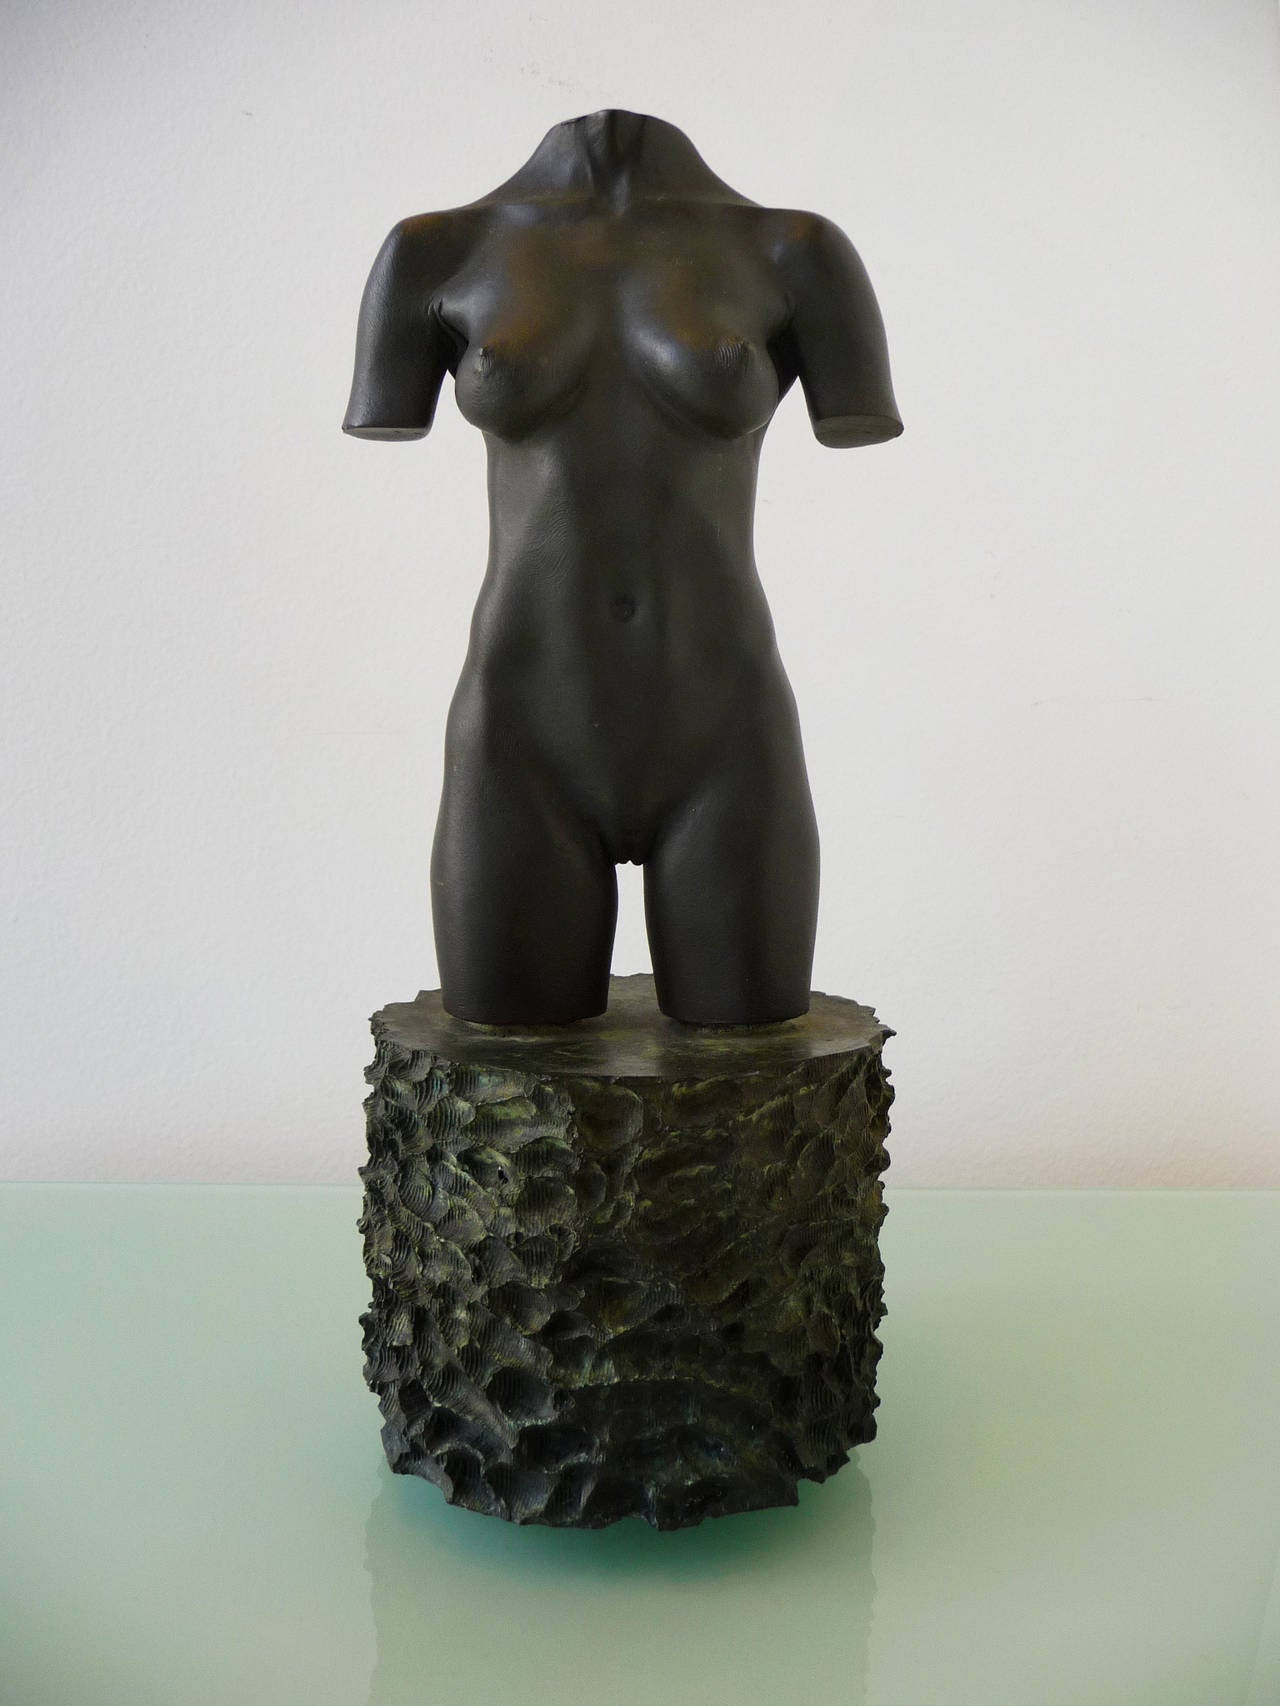 Moca Torso - Sculpture by Robert Graham